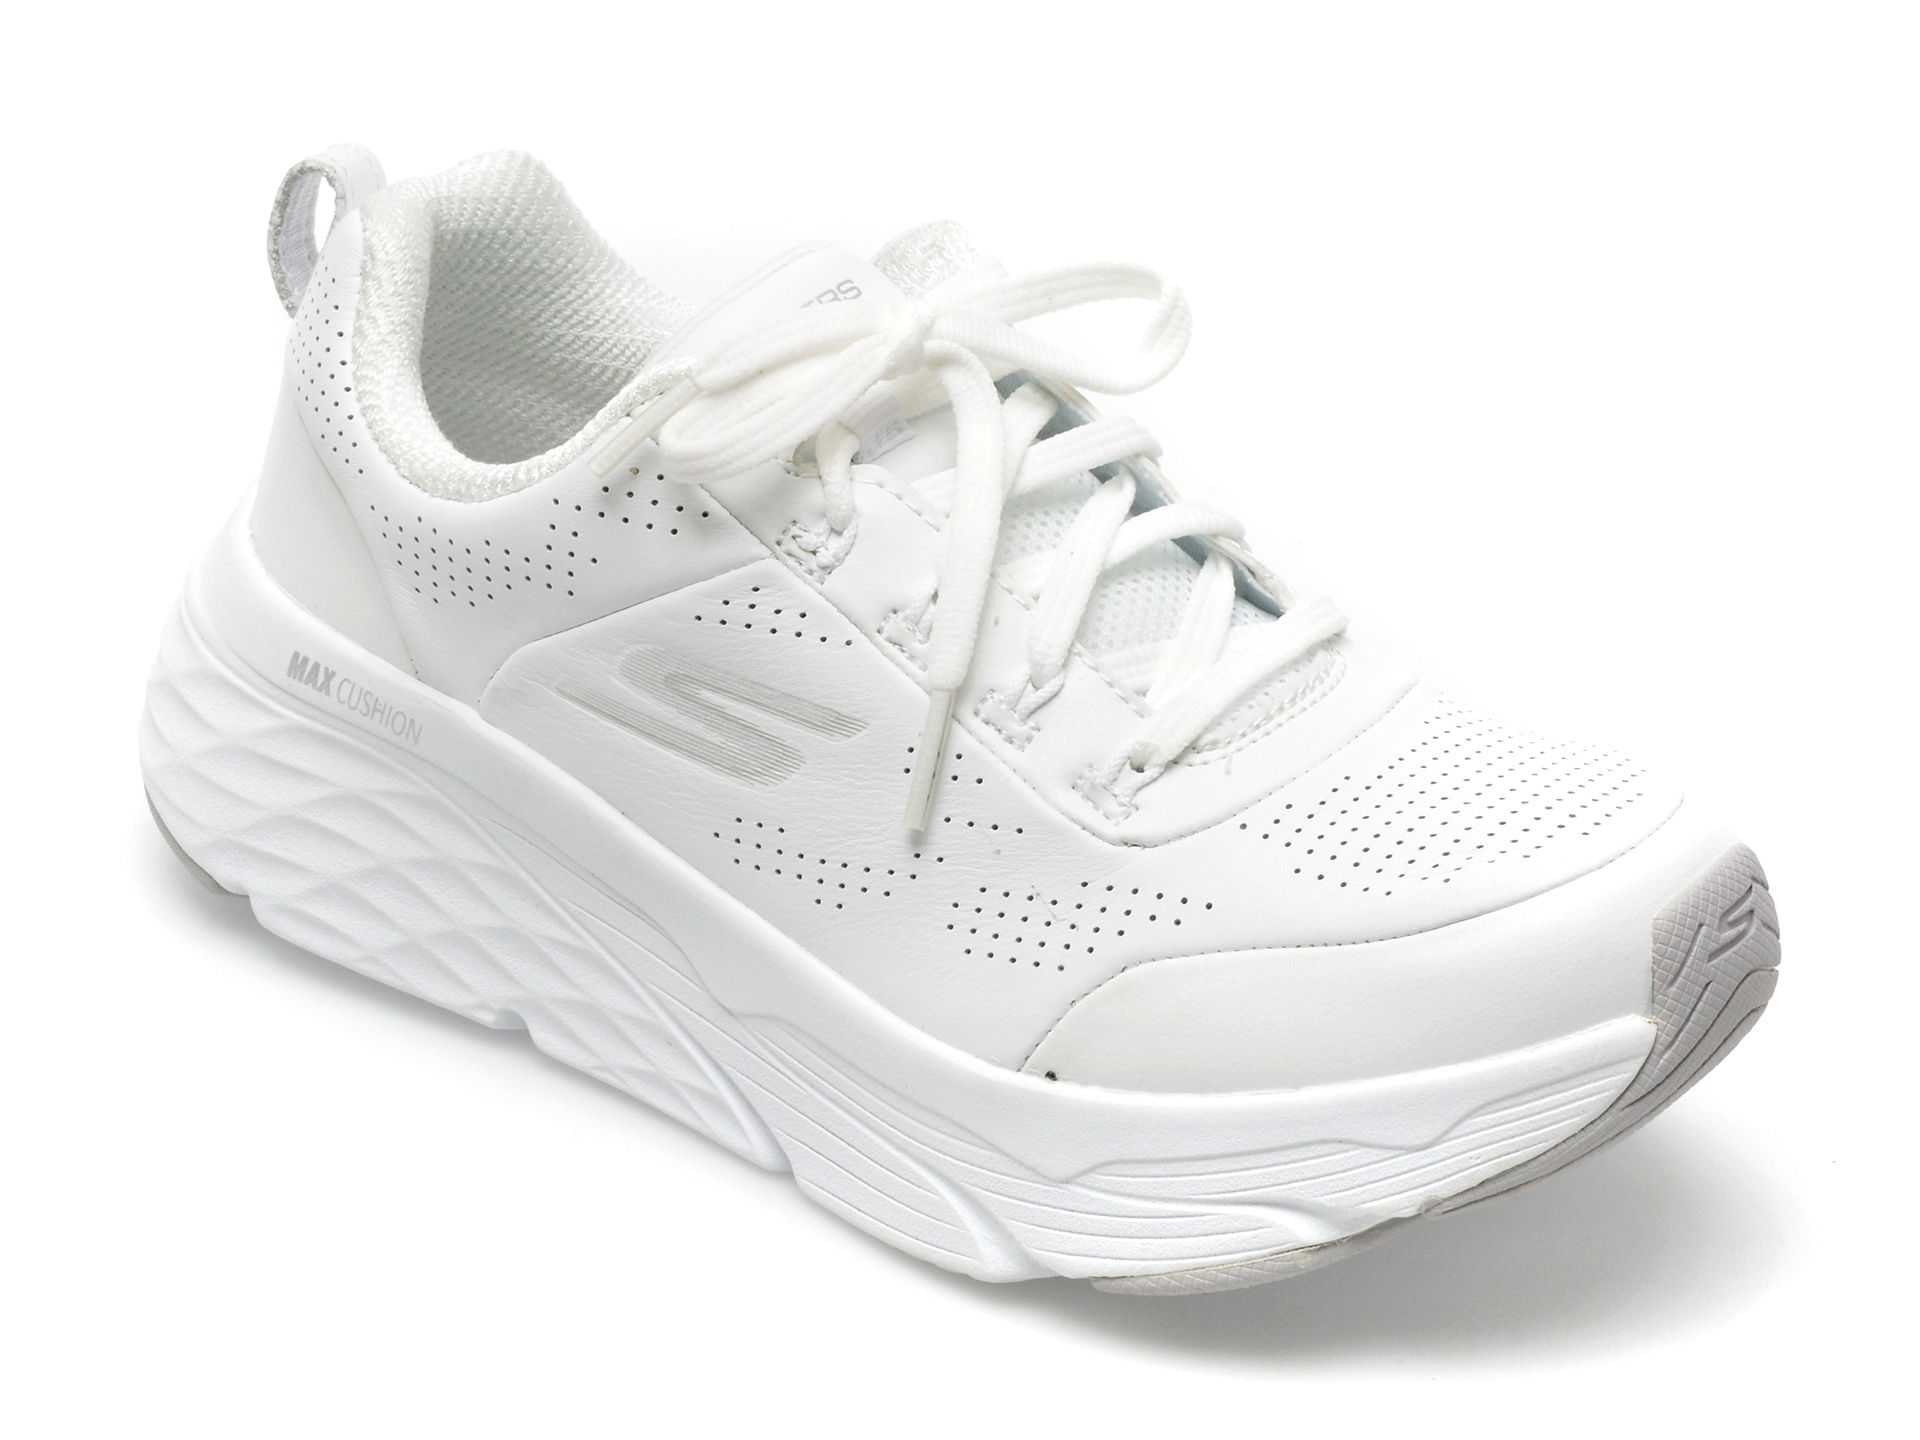 Pantofi sport SKECHERS albi, 128044, din piele naturala si piele ecologica